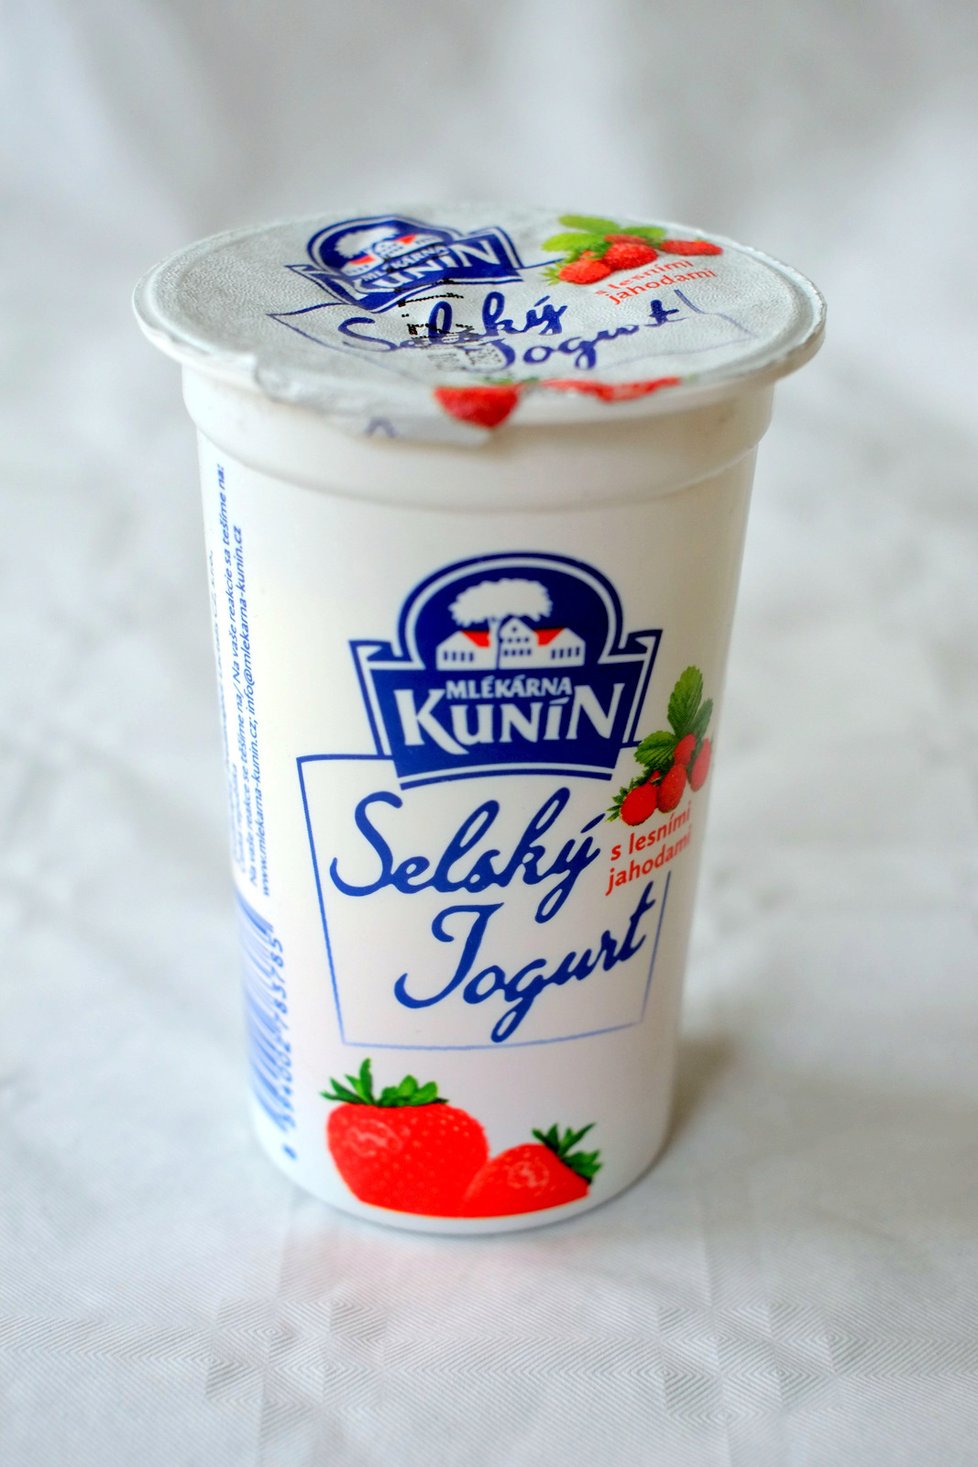 Selský jogurt jahoda, 13 gramů cukru